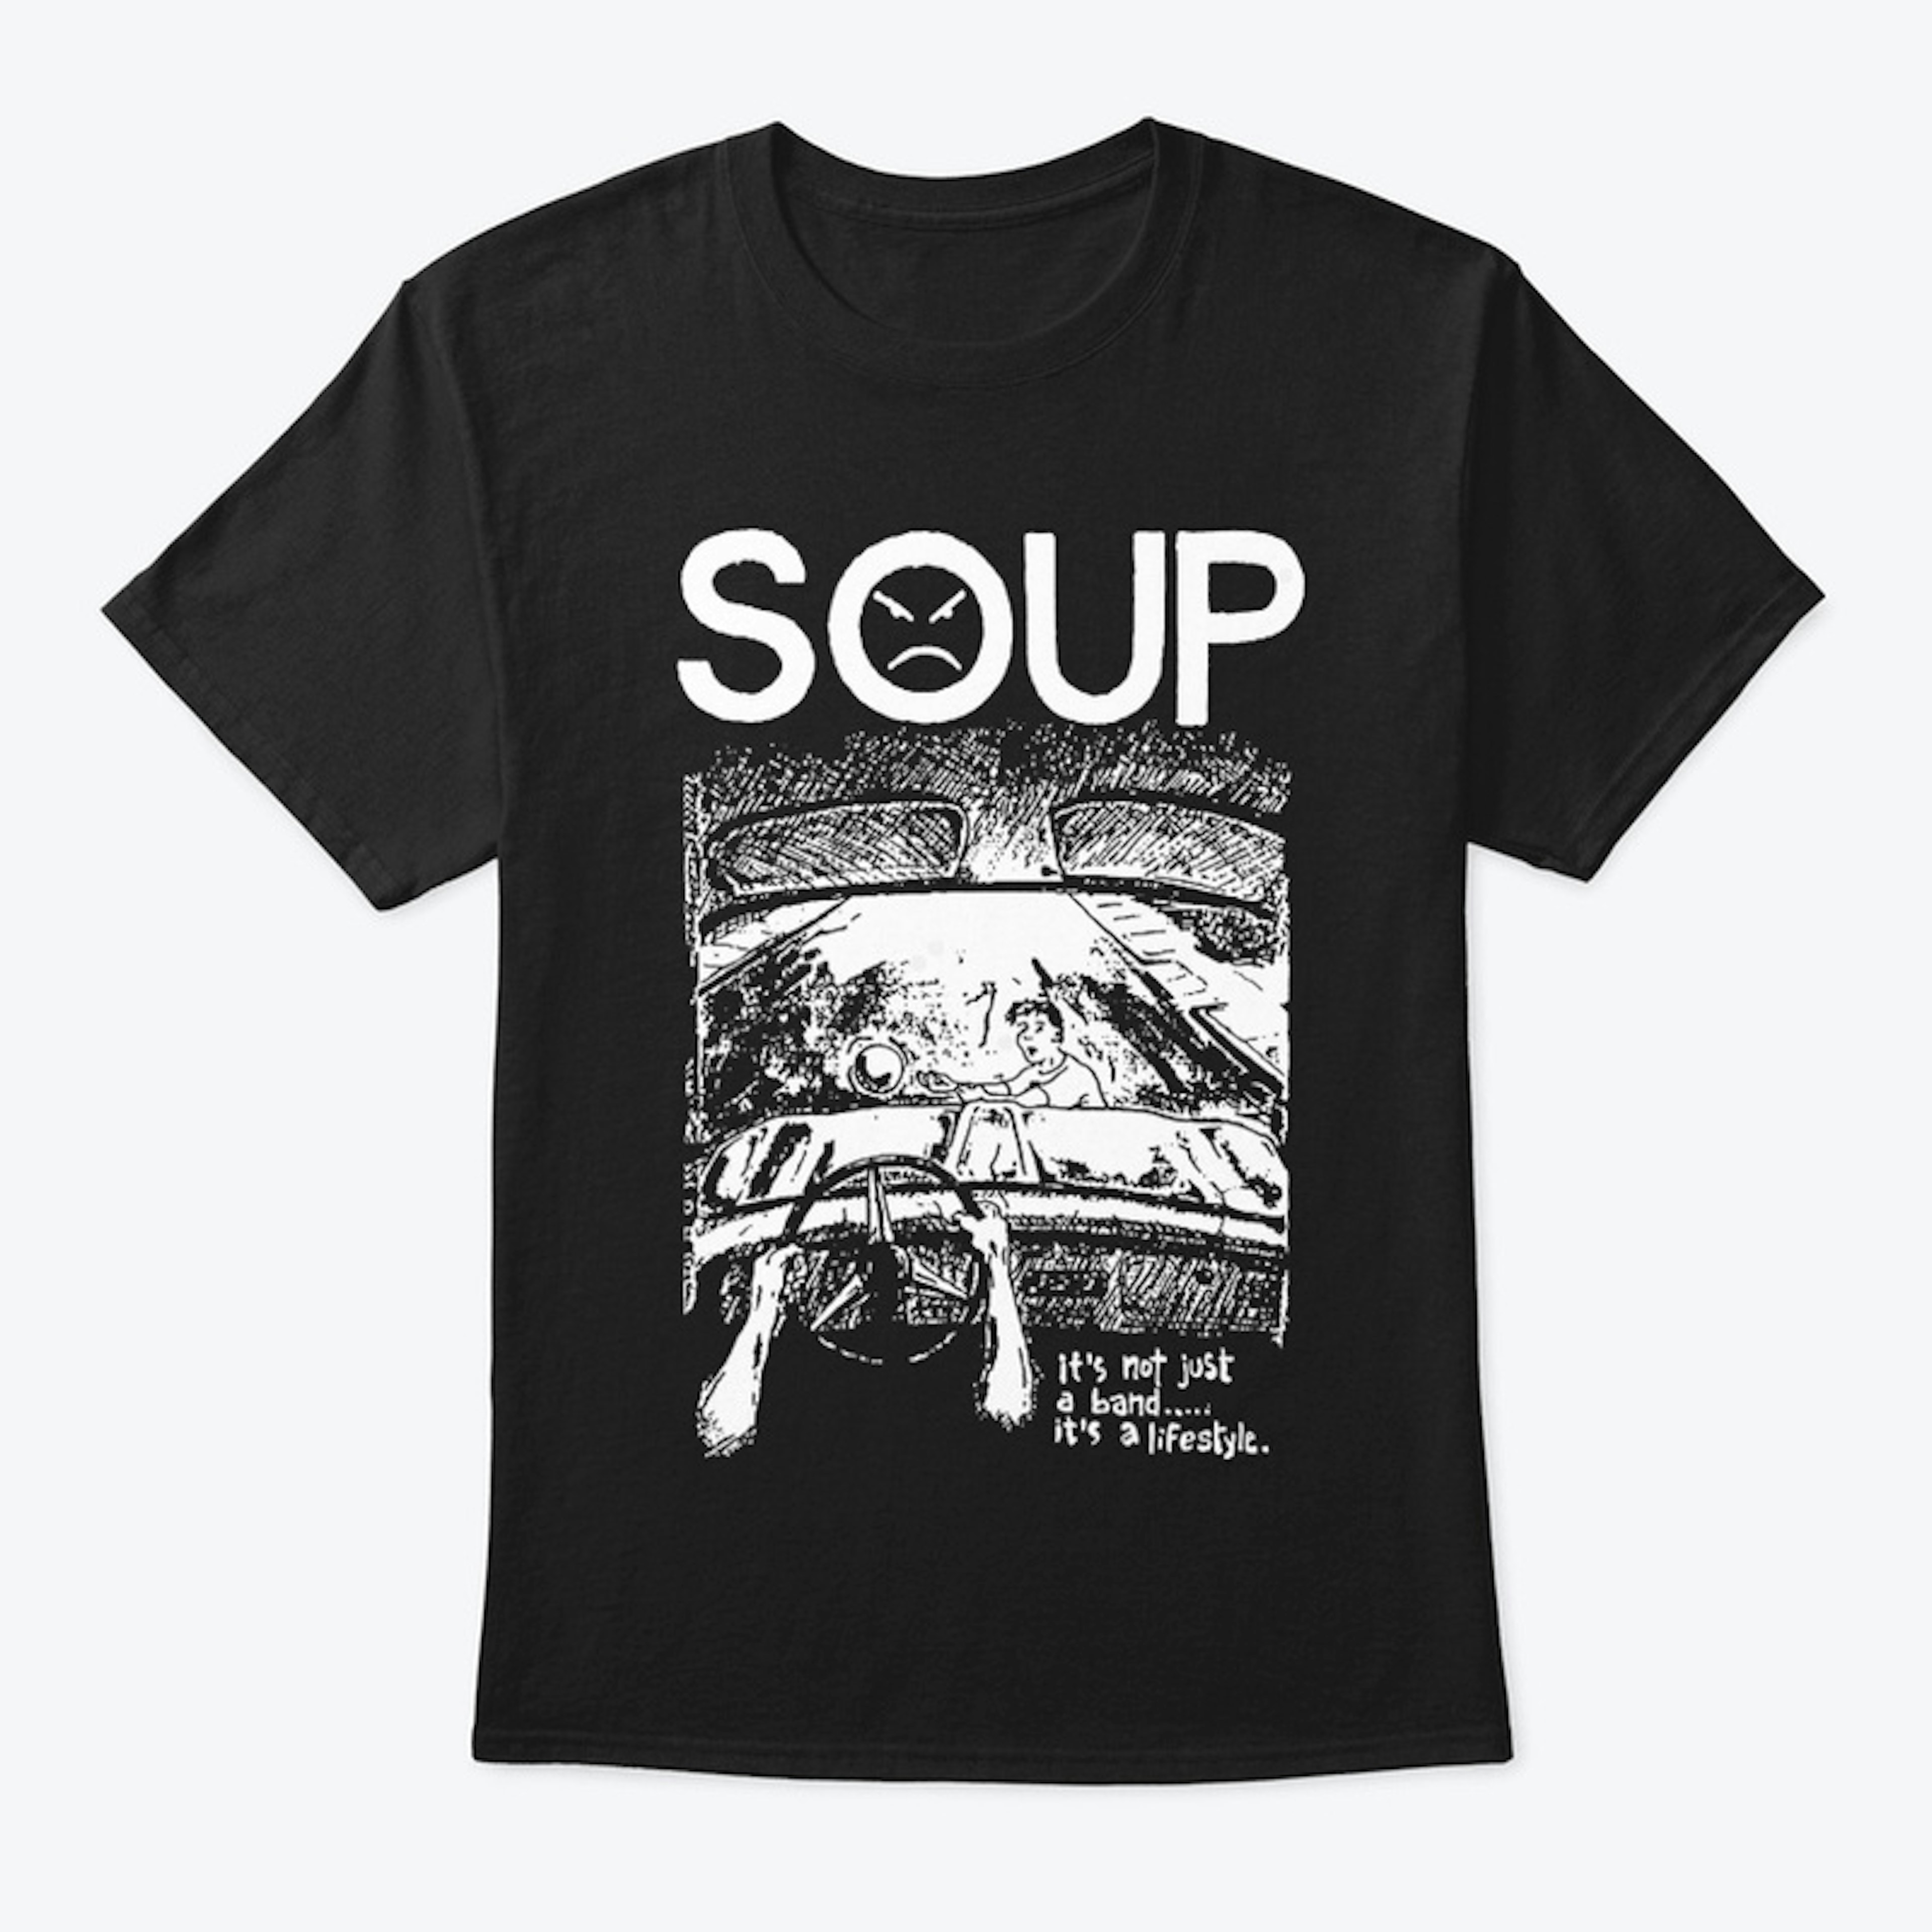 Soup - It's a lifestyle